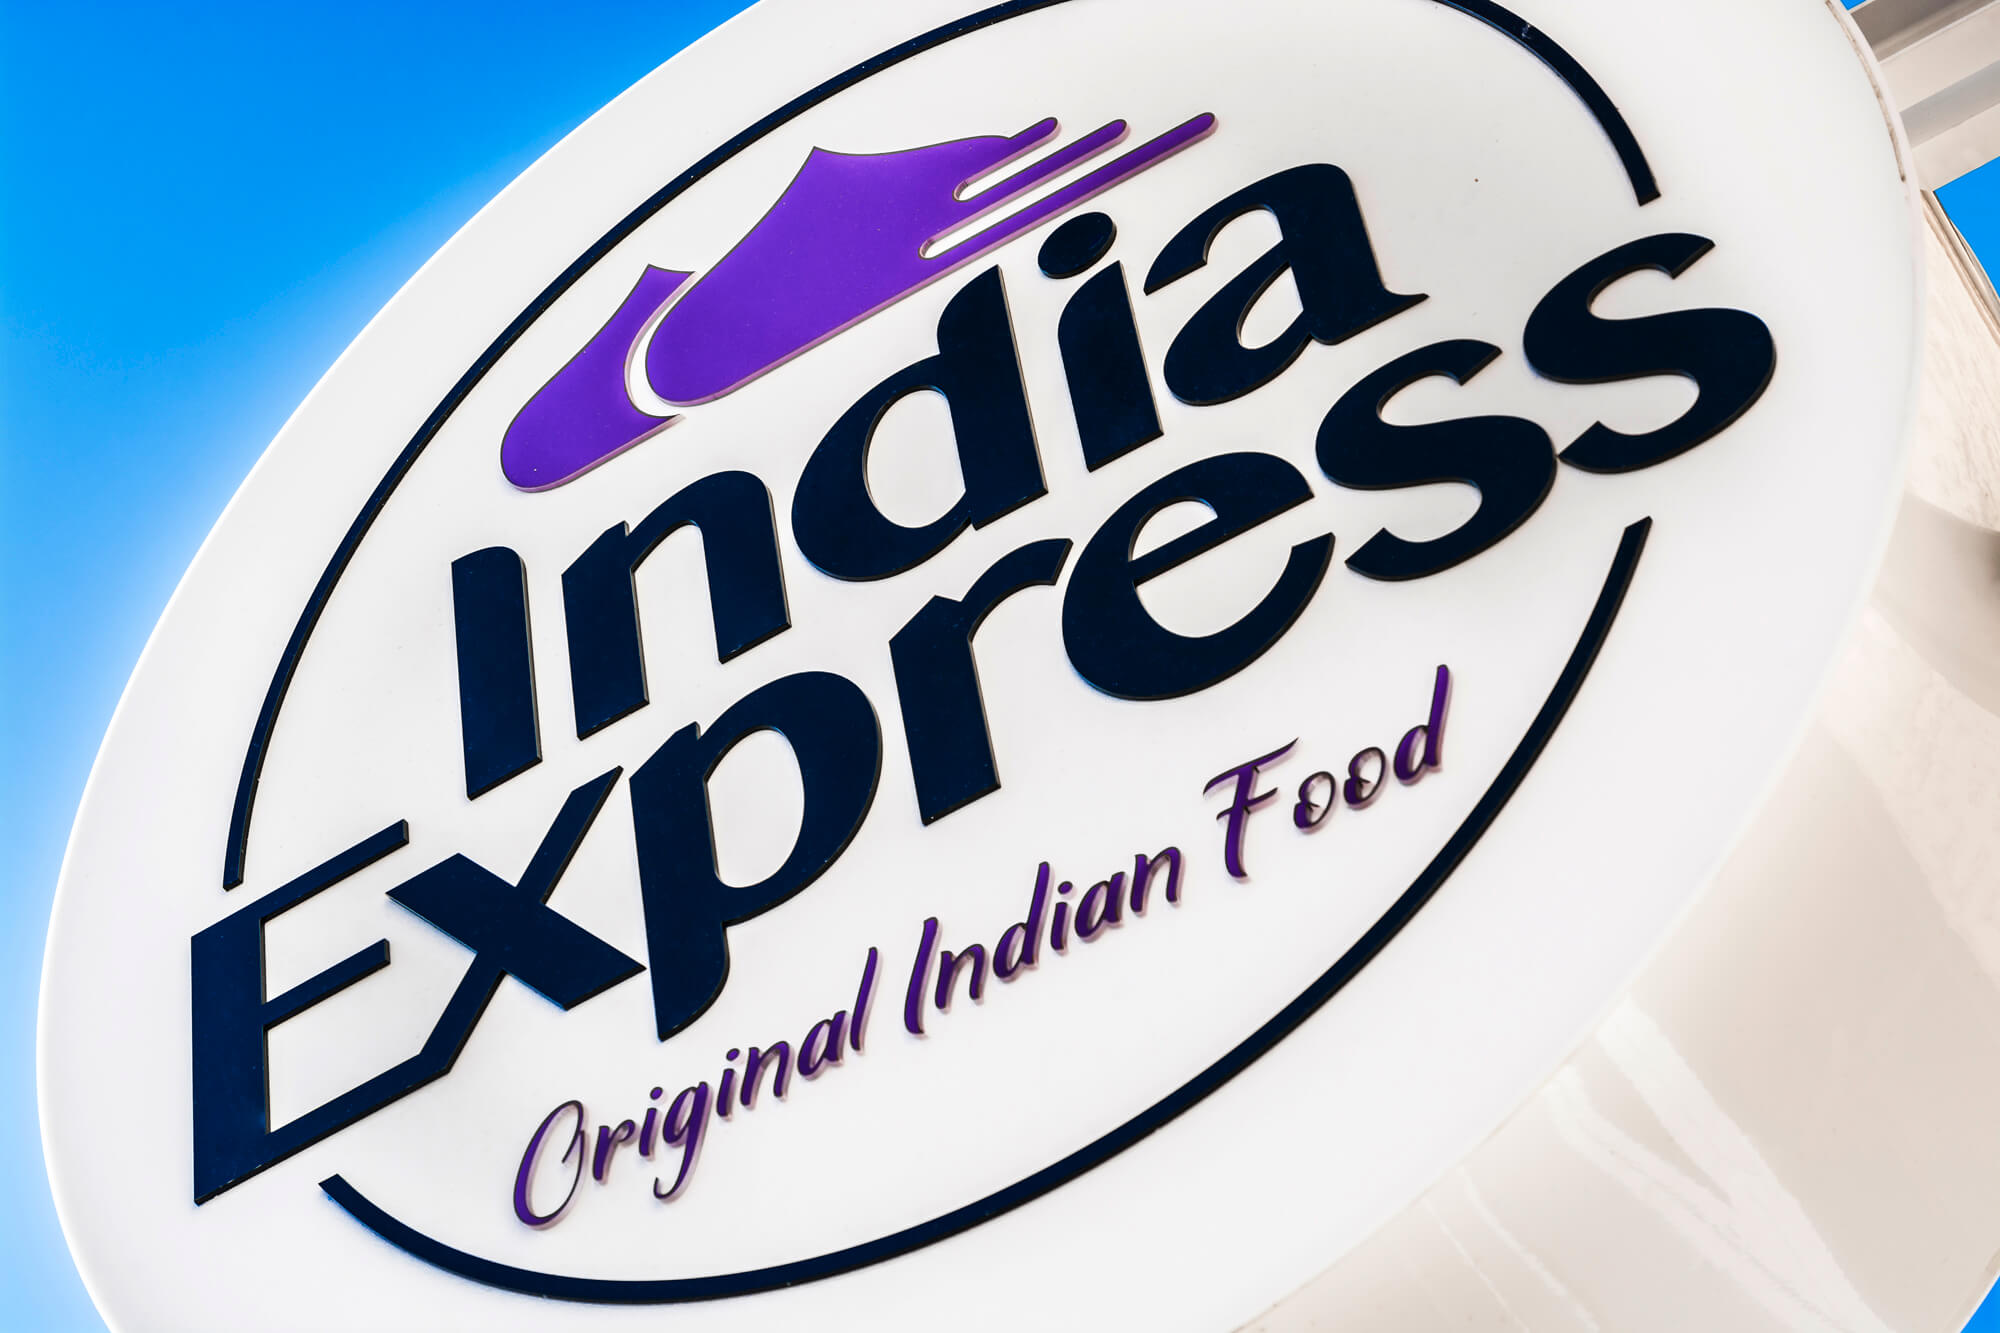 Indien-Express - India Express - Firmenlogo und Werbesemaphore hängen neben dem Eingang